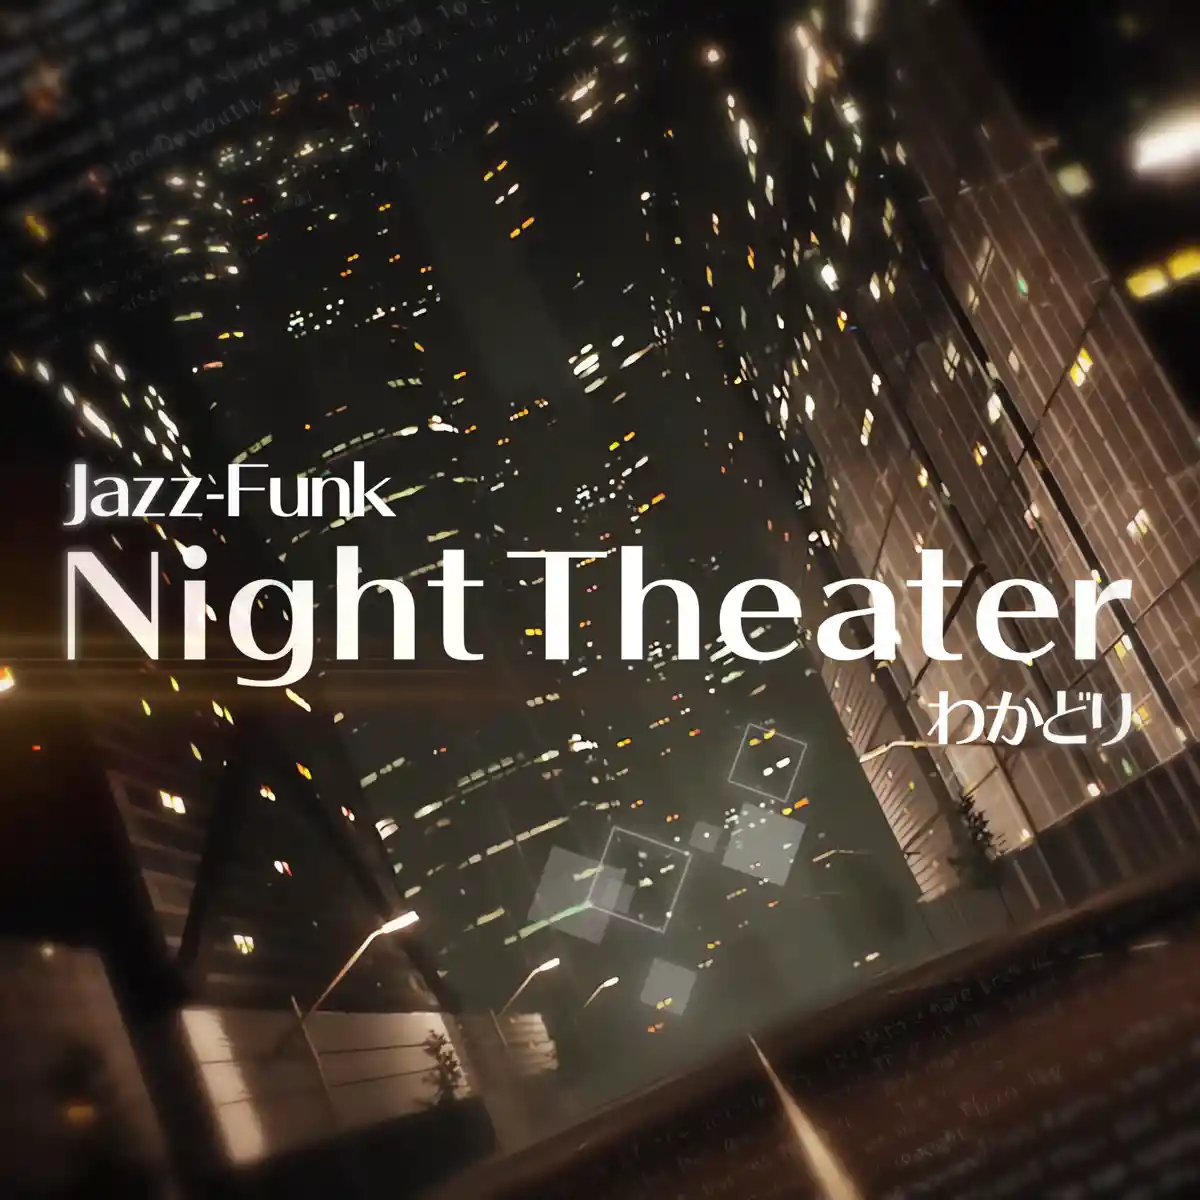 NightTheater.jpg